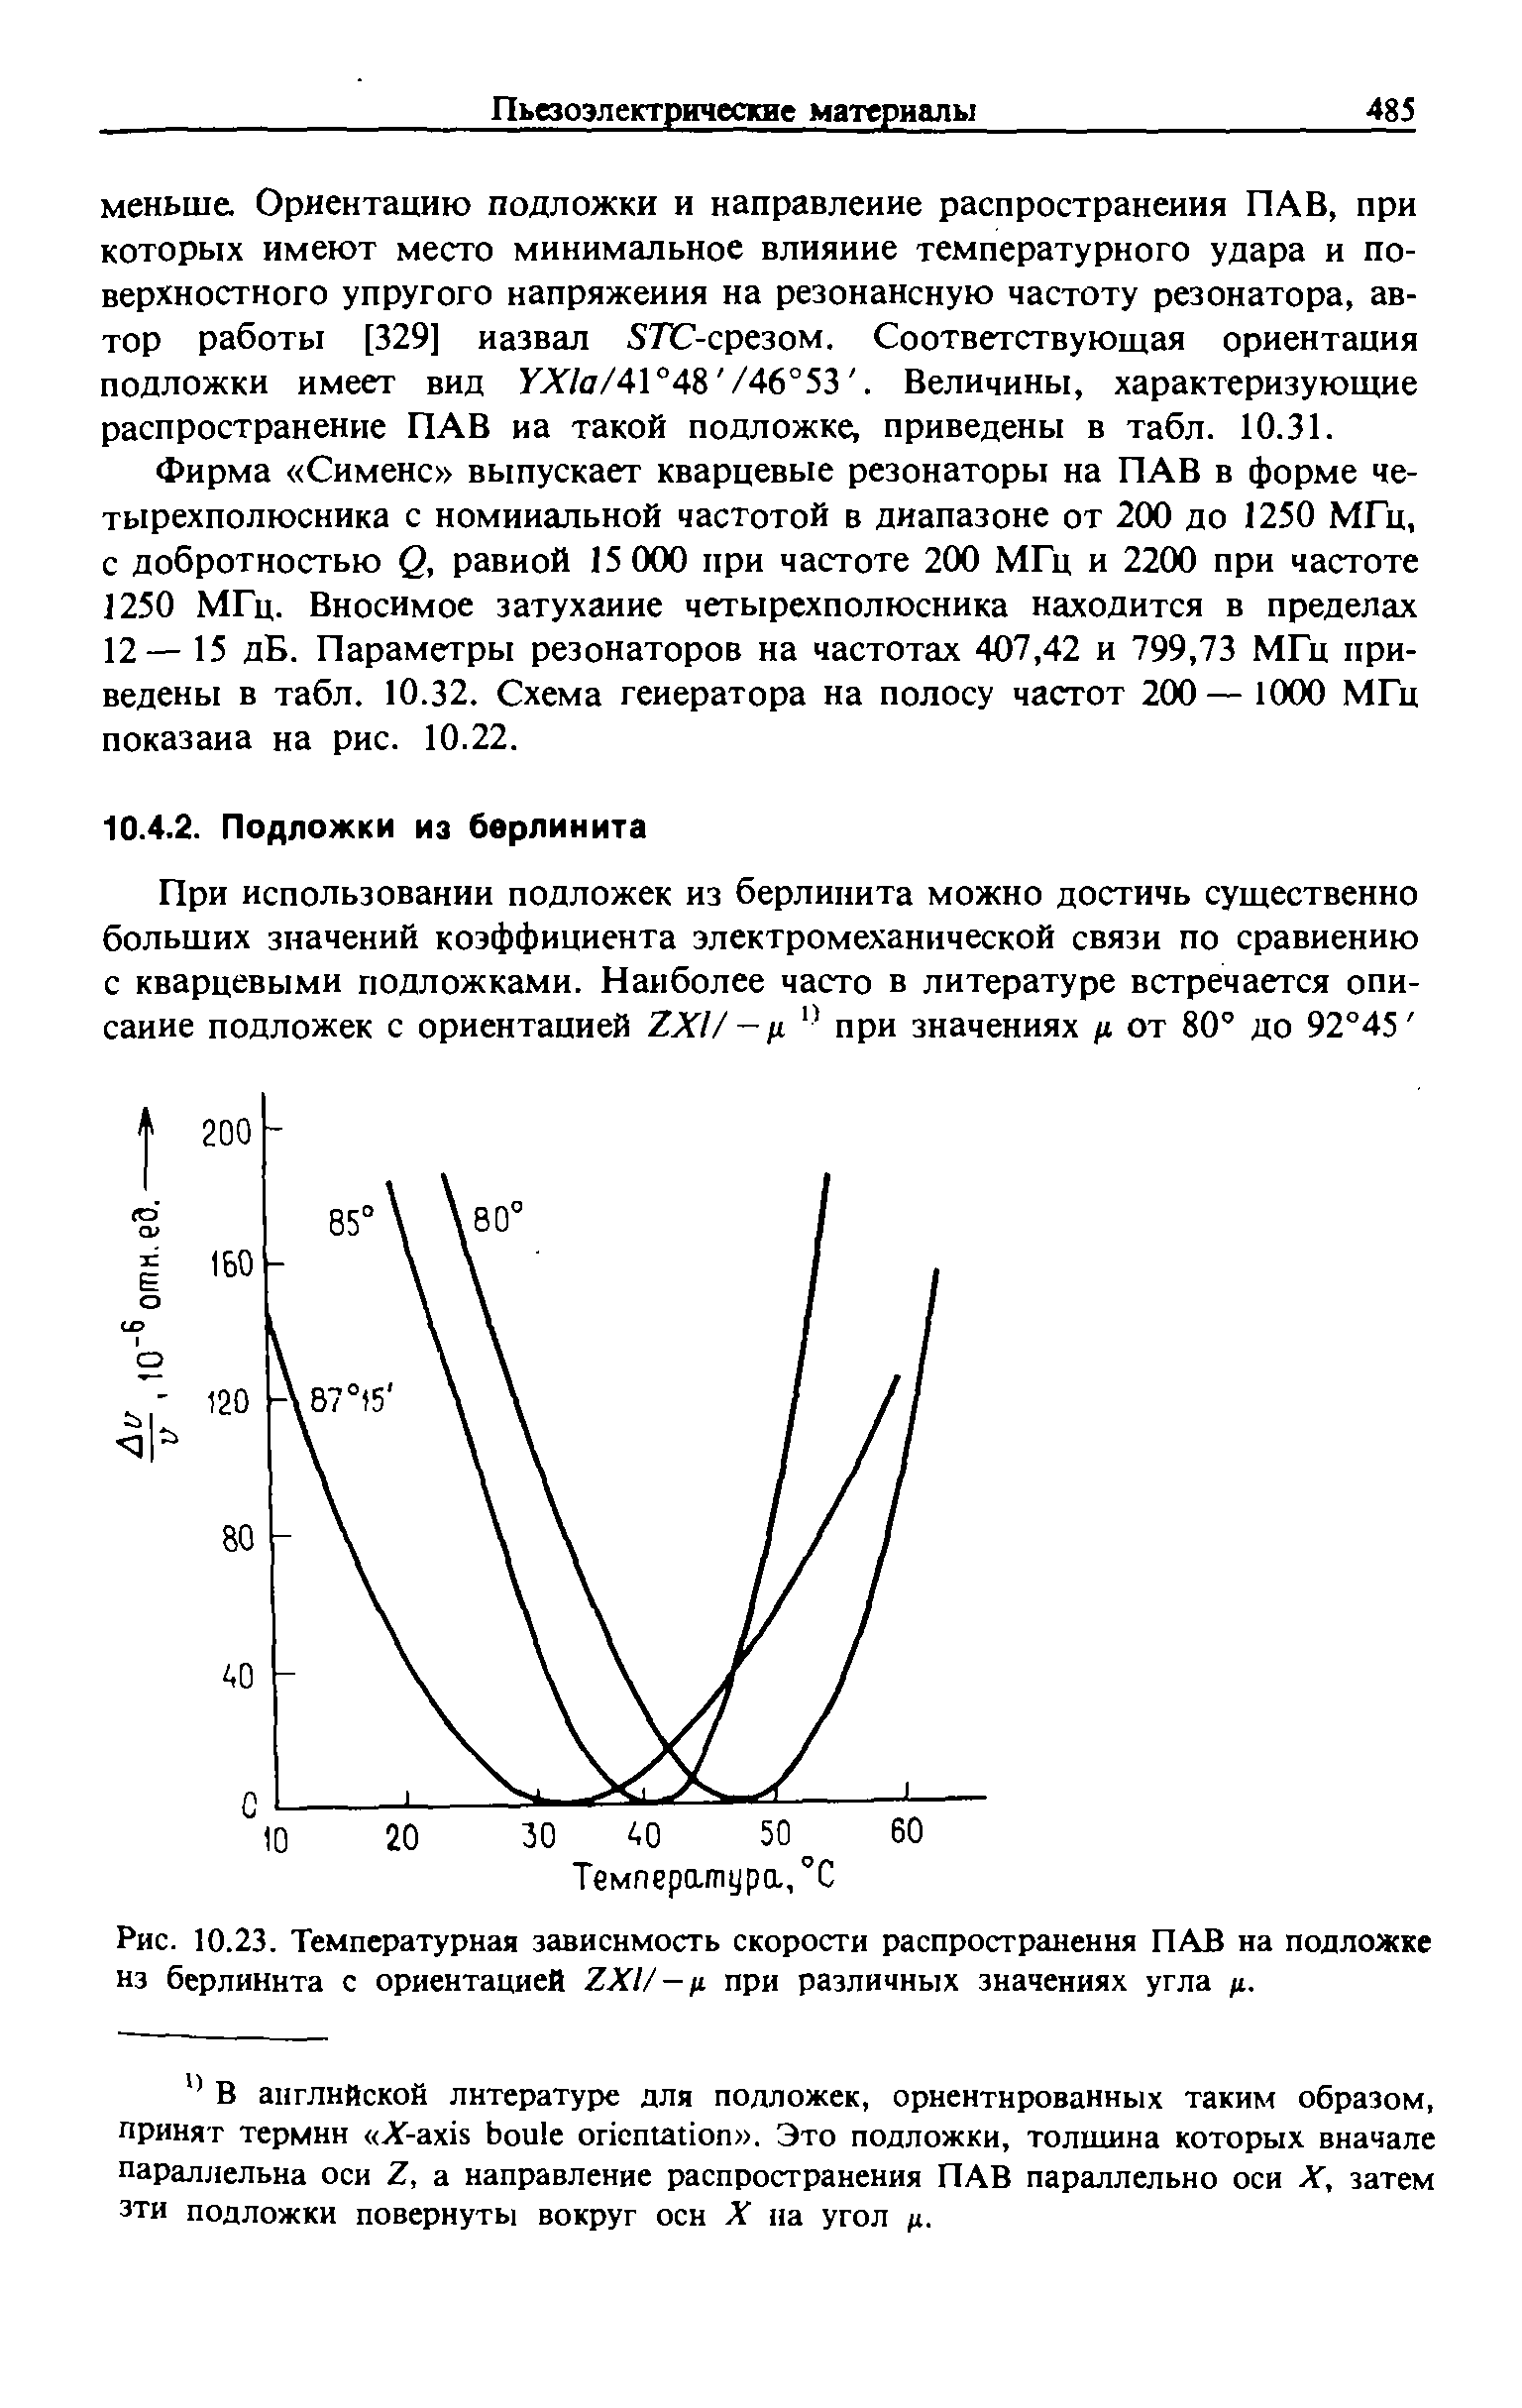 Рис. 10.23. Температурная зависимость скорости распространения ПАВ на подложке нз берлинита с ориентацией 2X1/- г. при <a href="/info/673251">различных значениях</a> угла 1.
